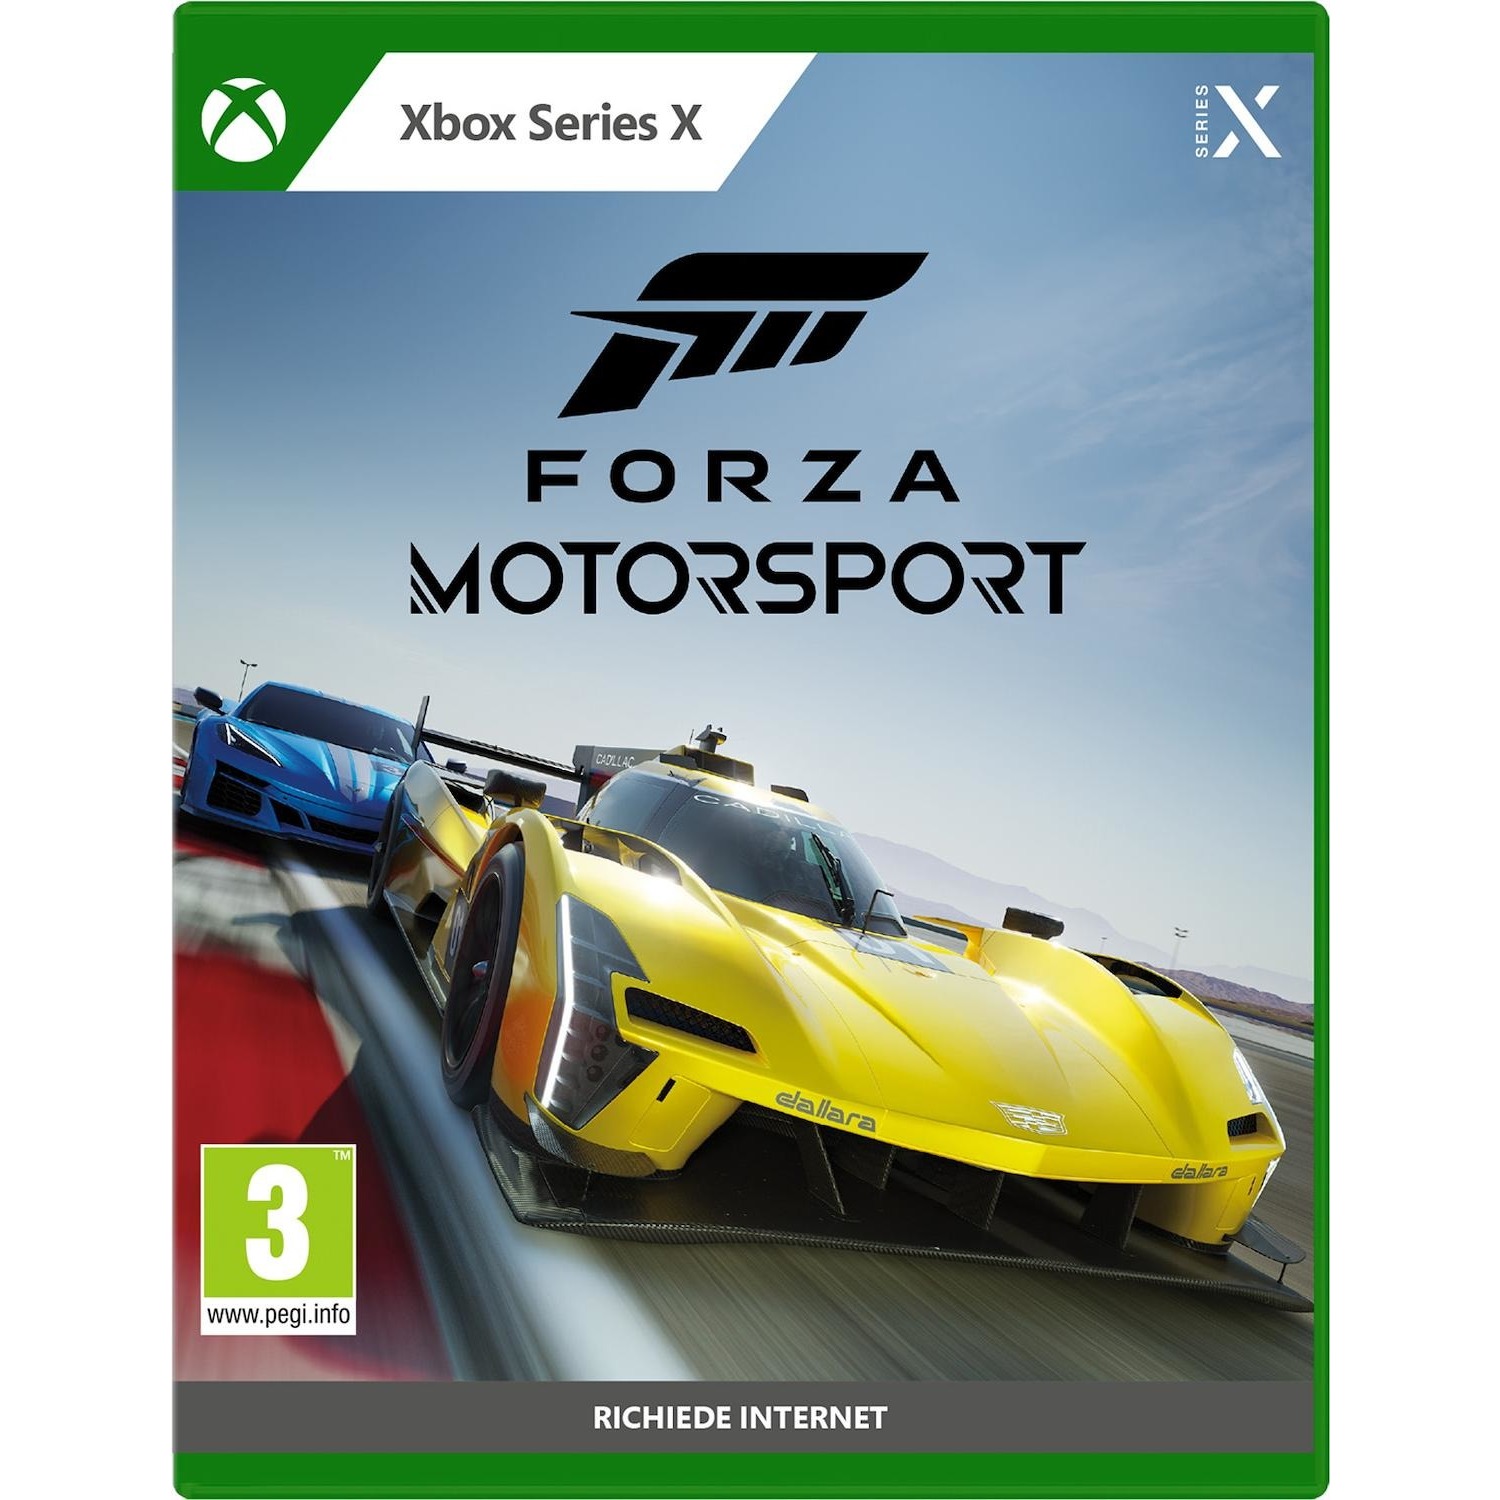 Immagine per Gioco XBOX Series X Forza Motorsport da DIMOStore